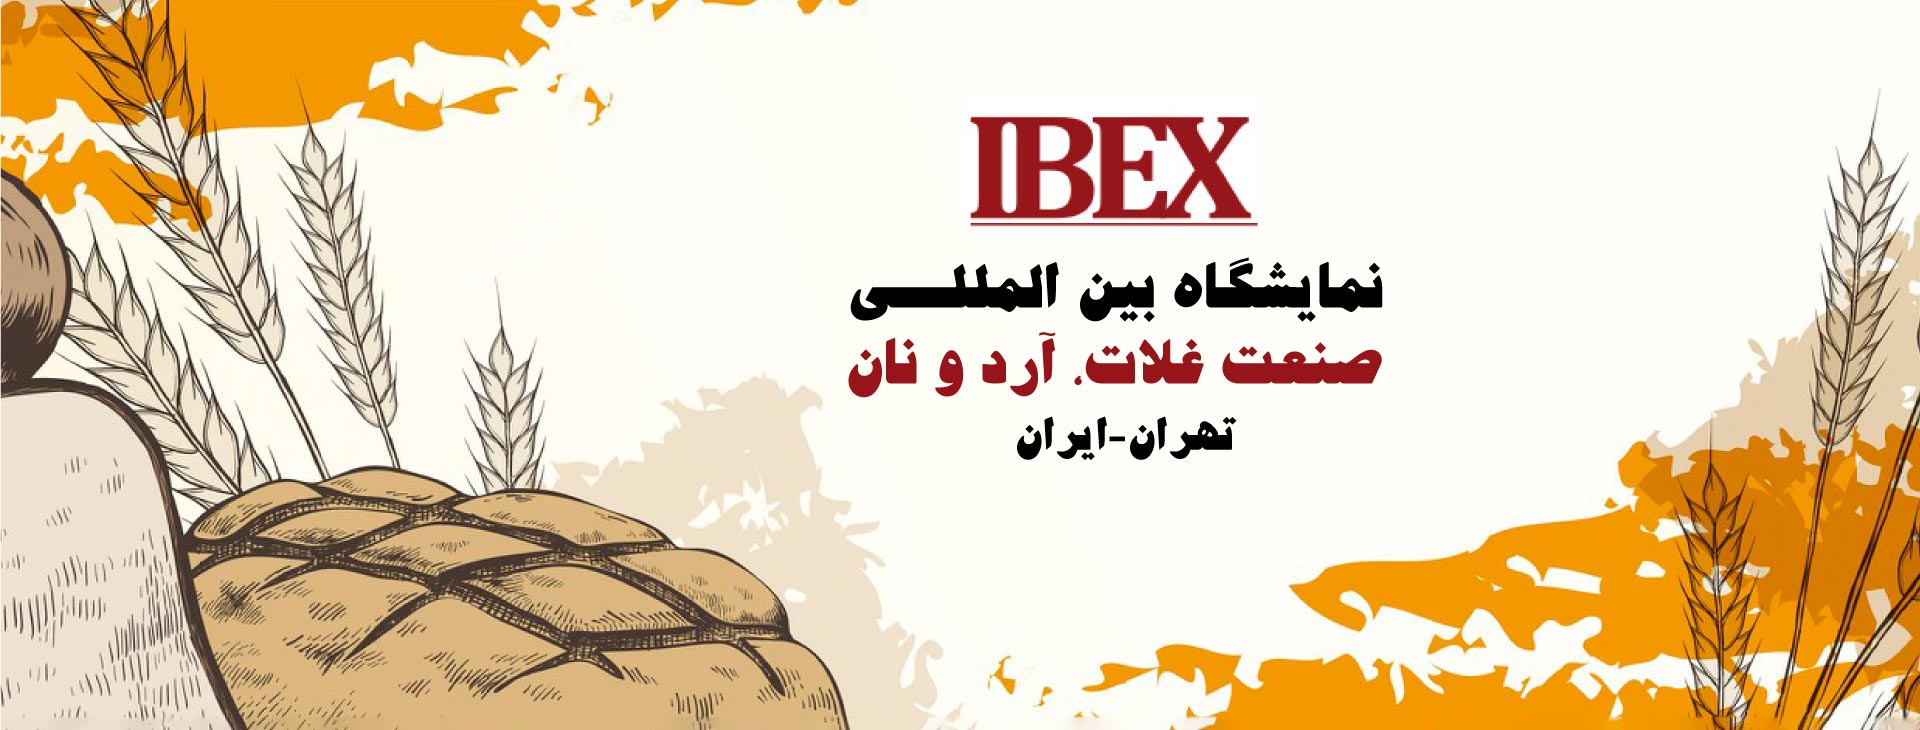 نمایشگاه بین المللی صنعت آرد، نان و غلات (IBEX) تهران-ایران